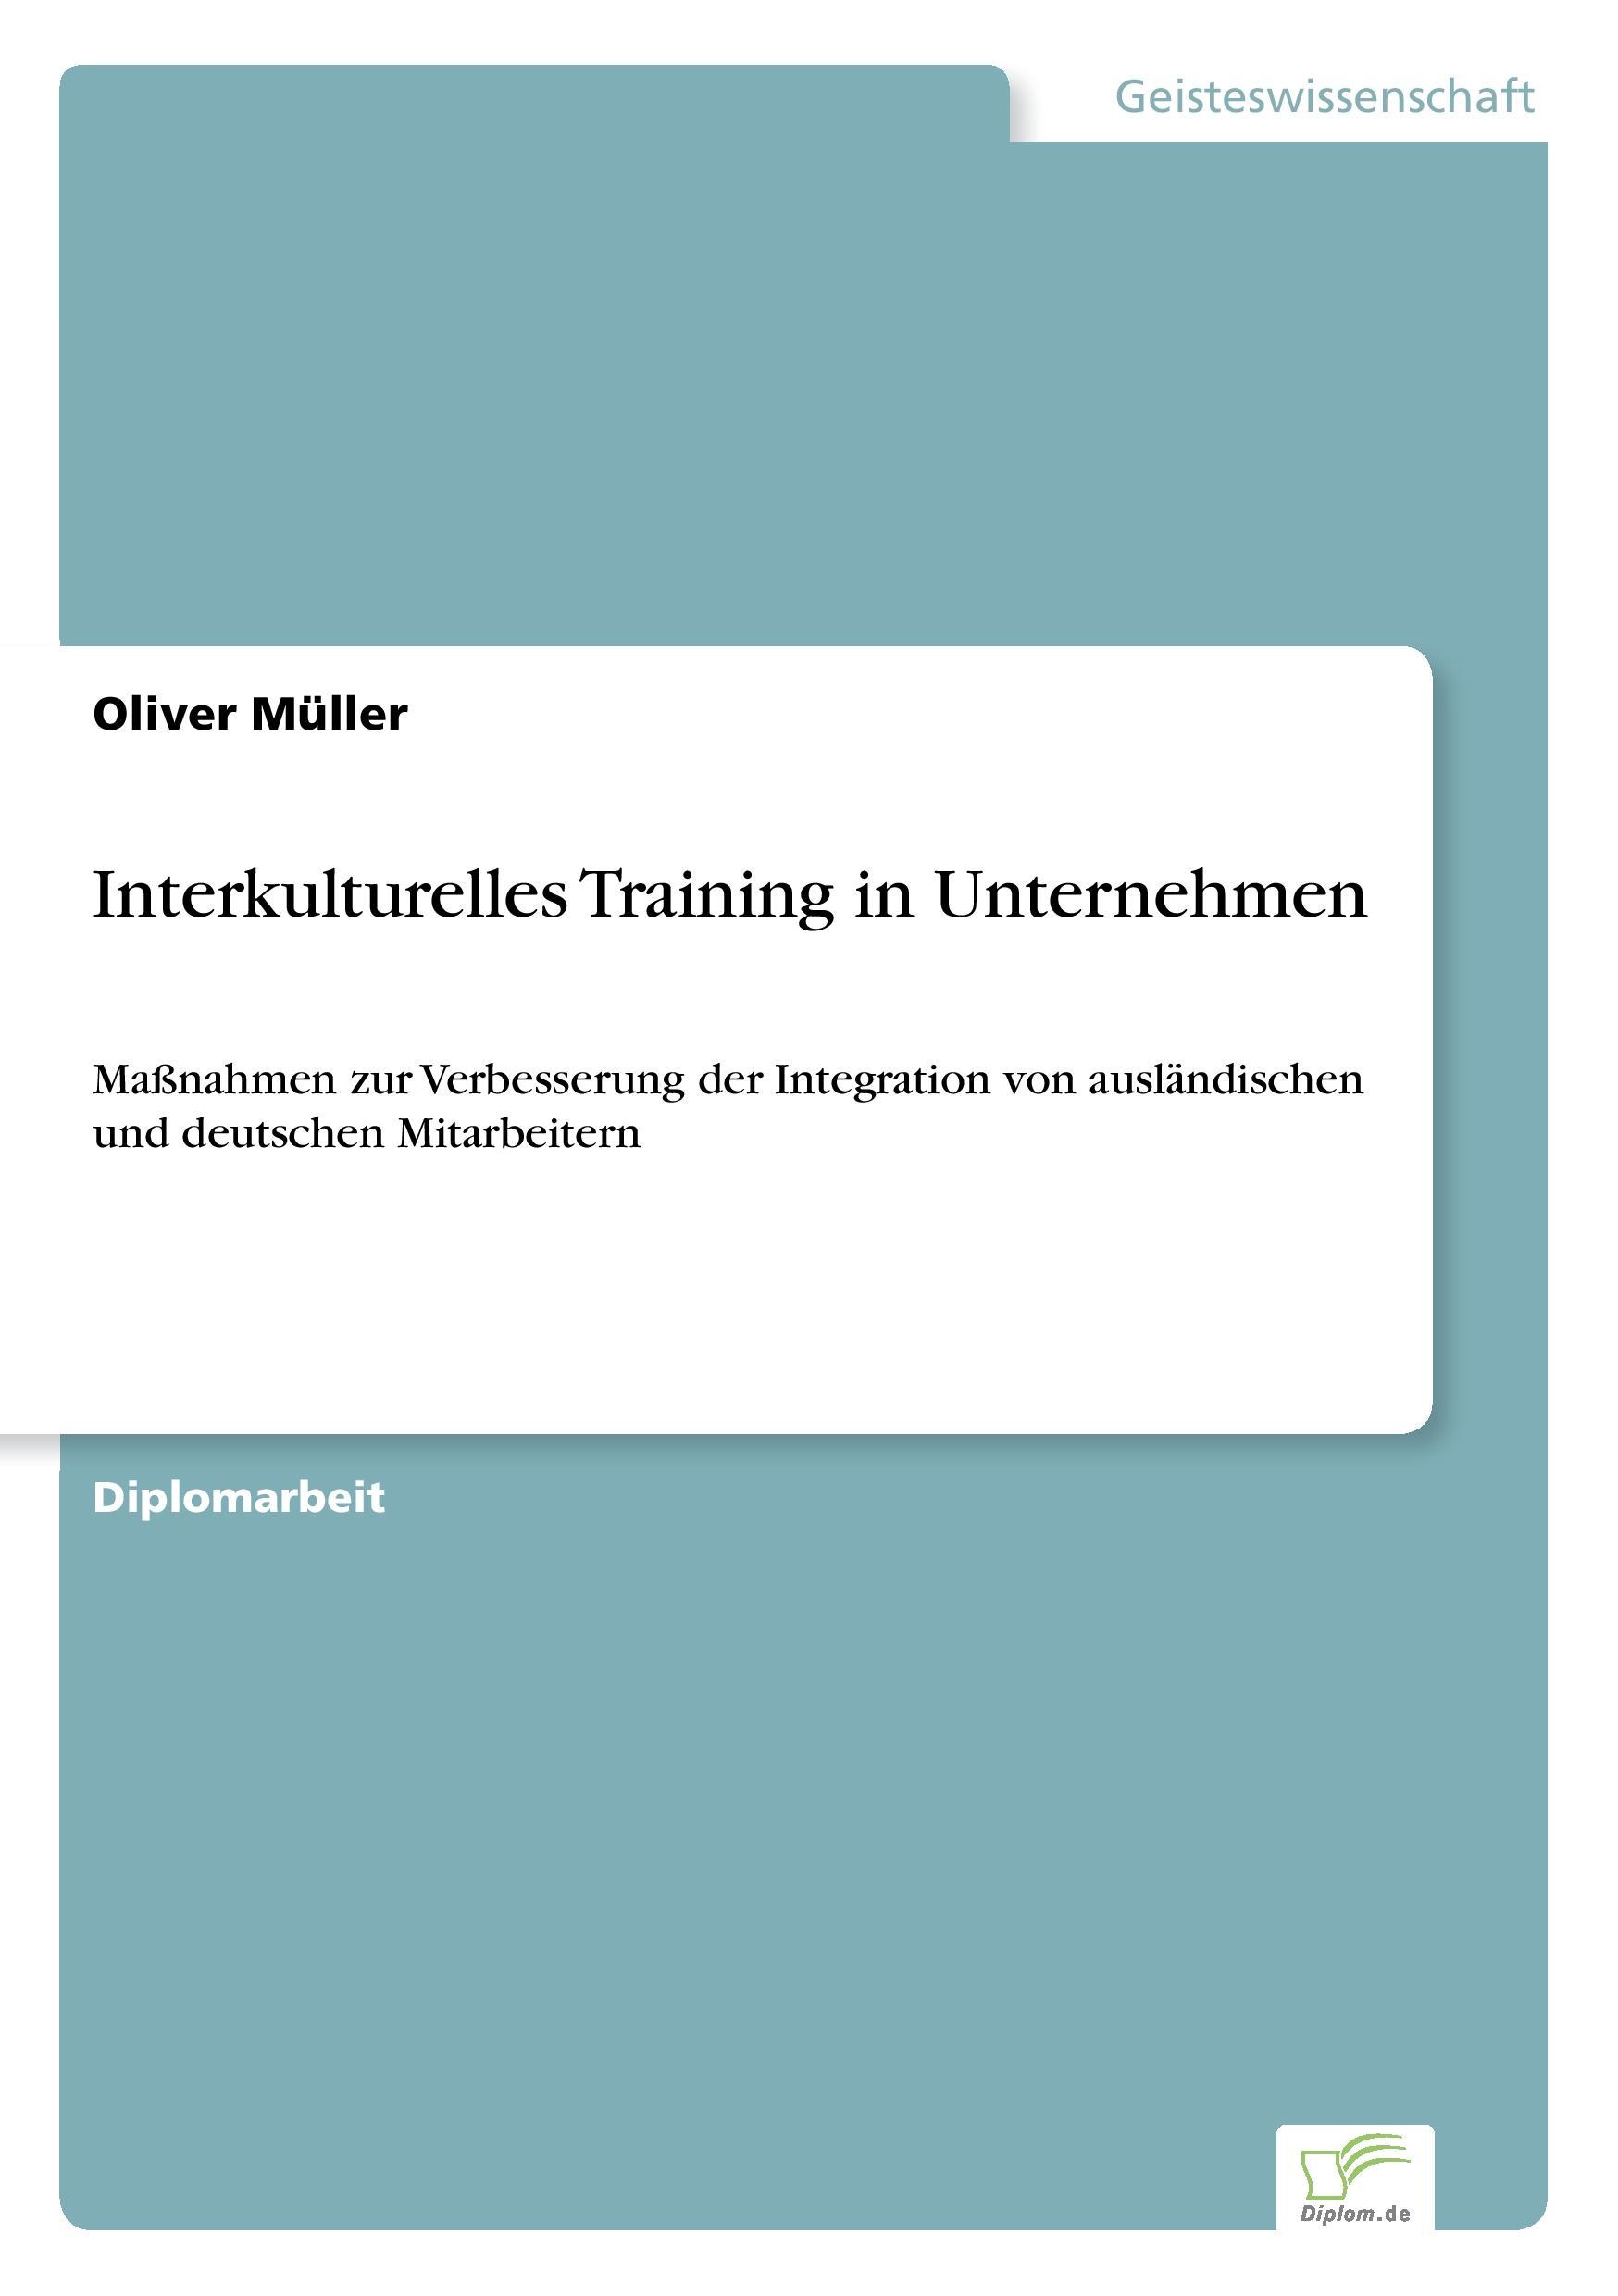 Interkulturelles Training in Unternehmen - Mueller, Oliver